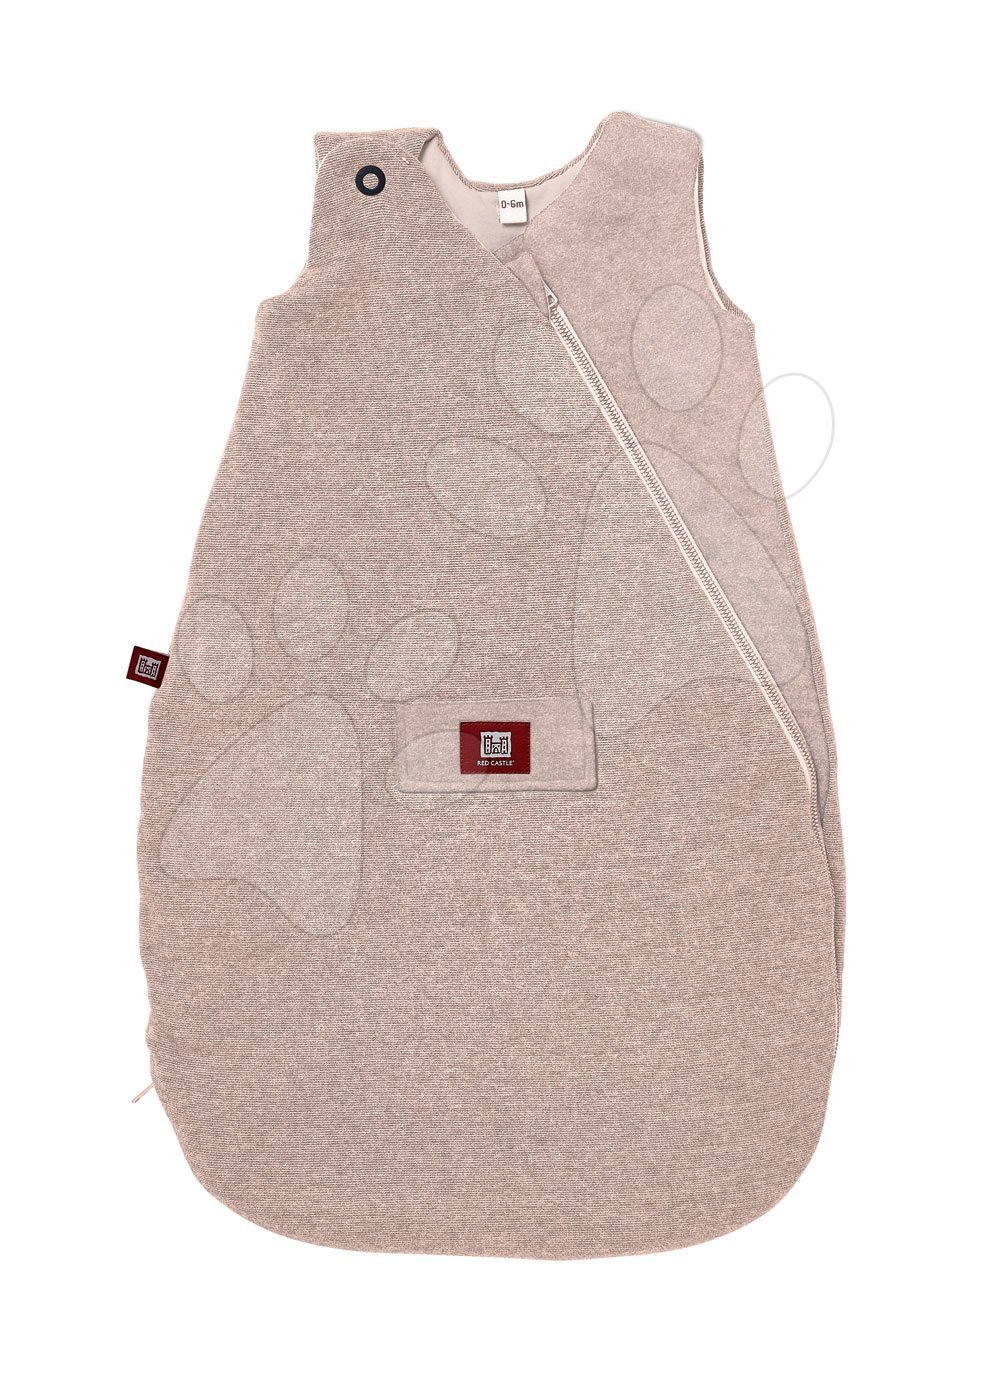 Dojčenský spací vak zimný - Dojčenský spací vak Red Castle Fine Line Collection zimný krémový od 0-6 mesiacov